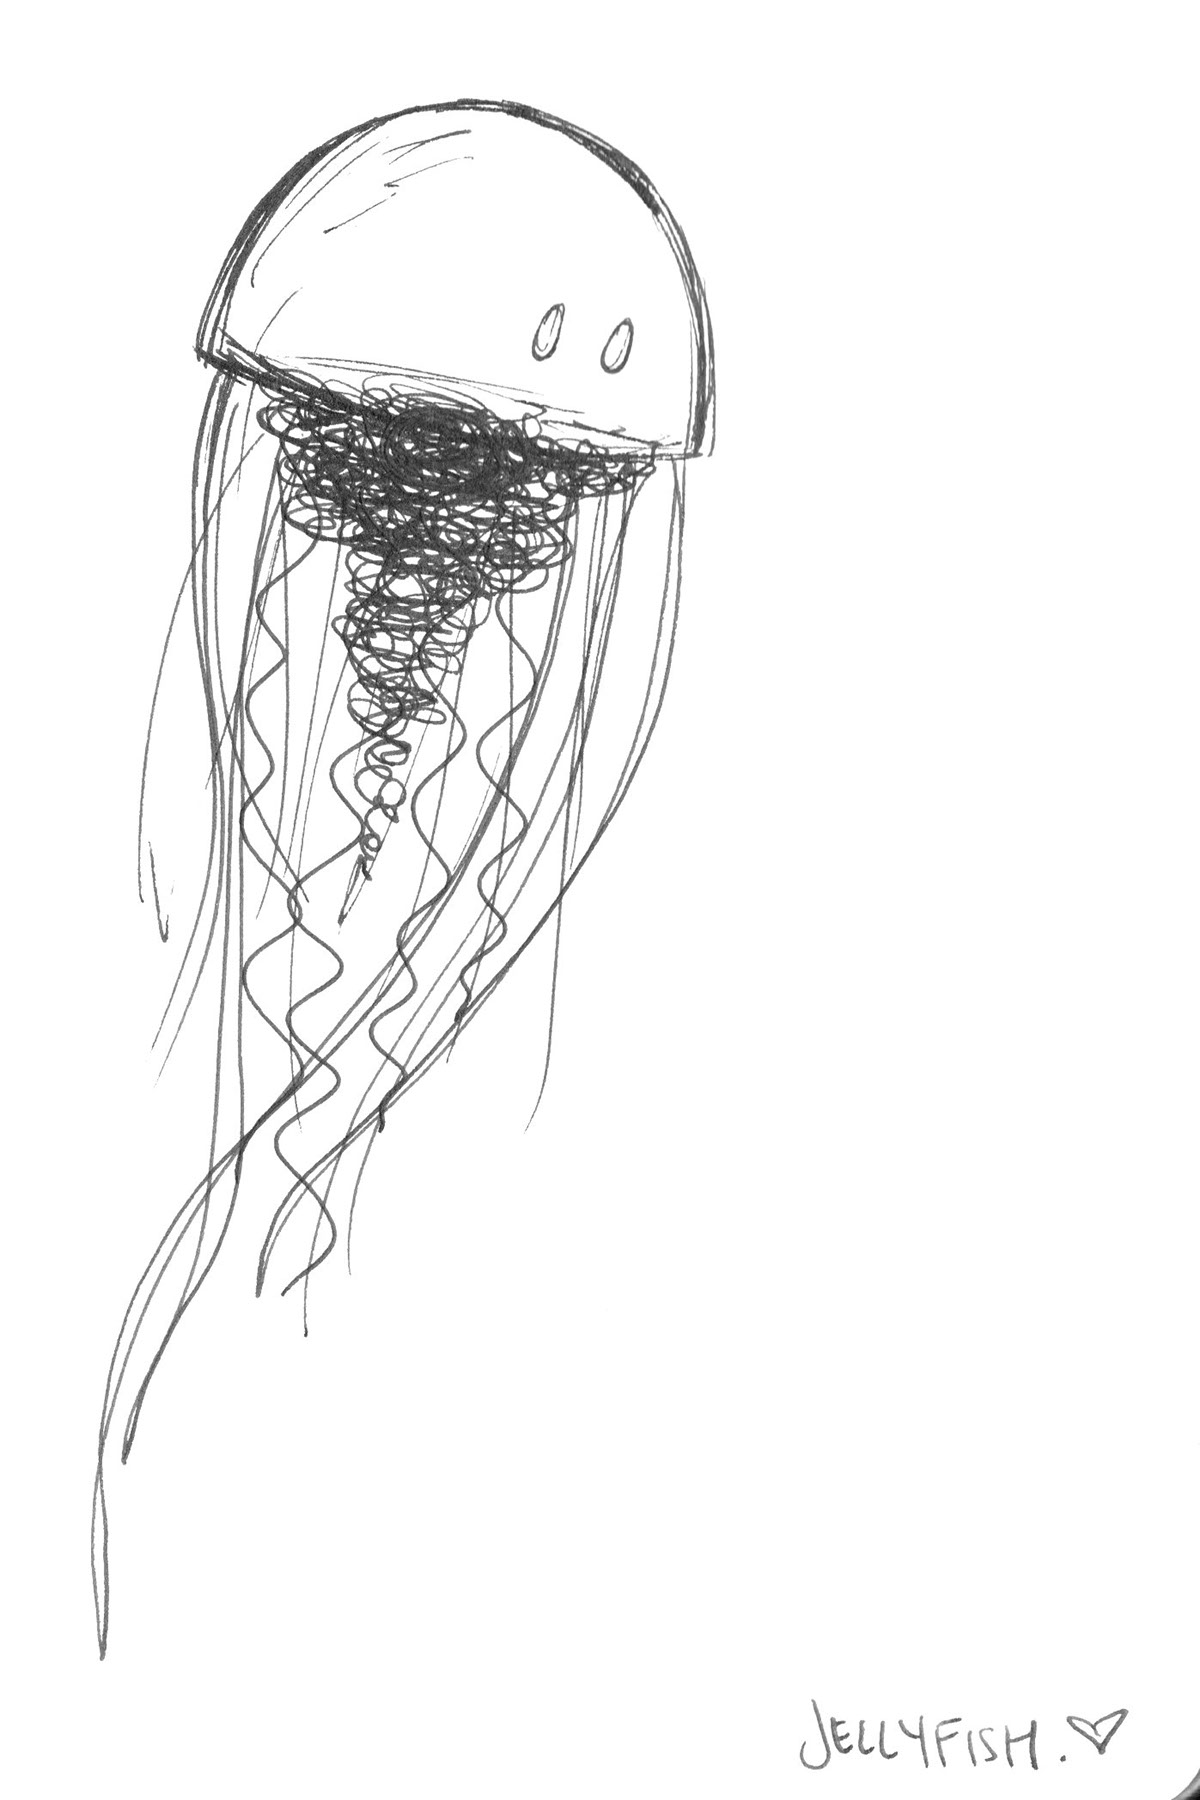 tattoo butterfly tucan mushroom dandelion jellyfish trippy surreal htijmanart lineart